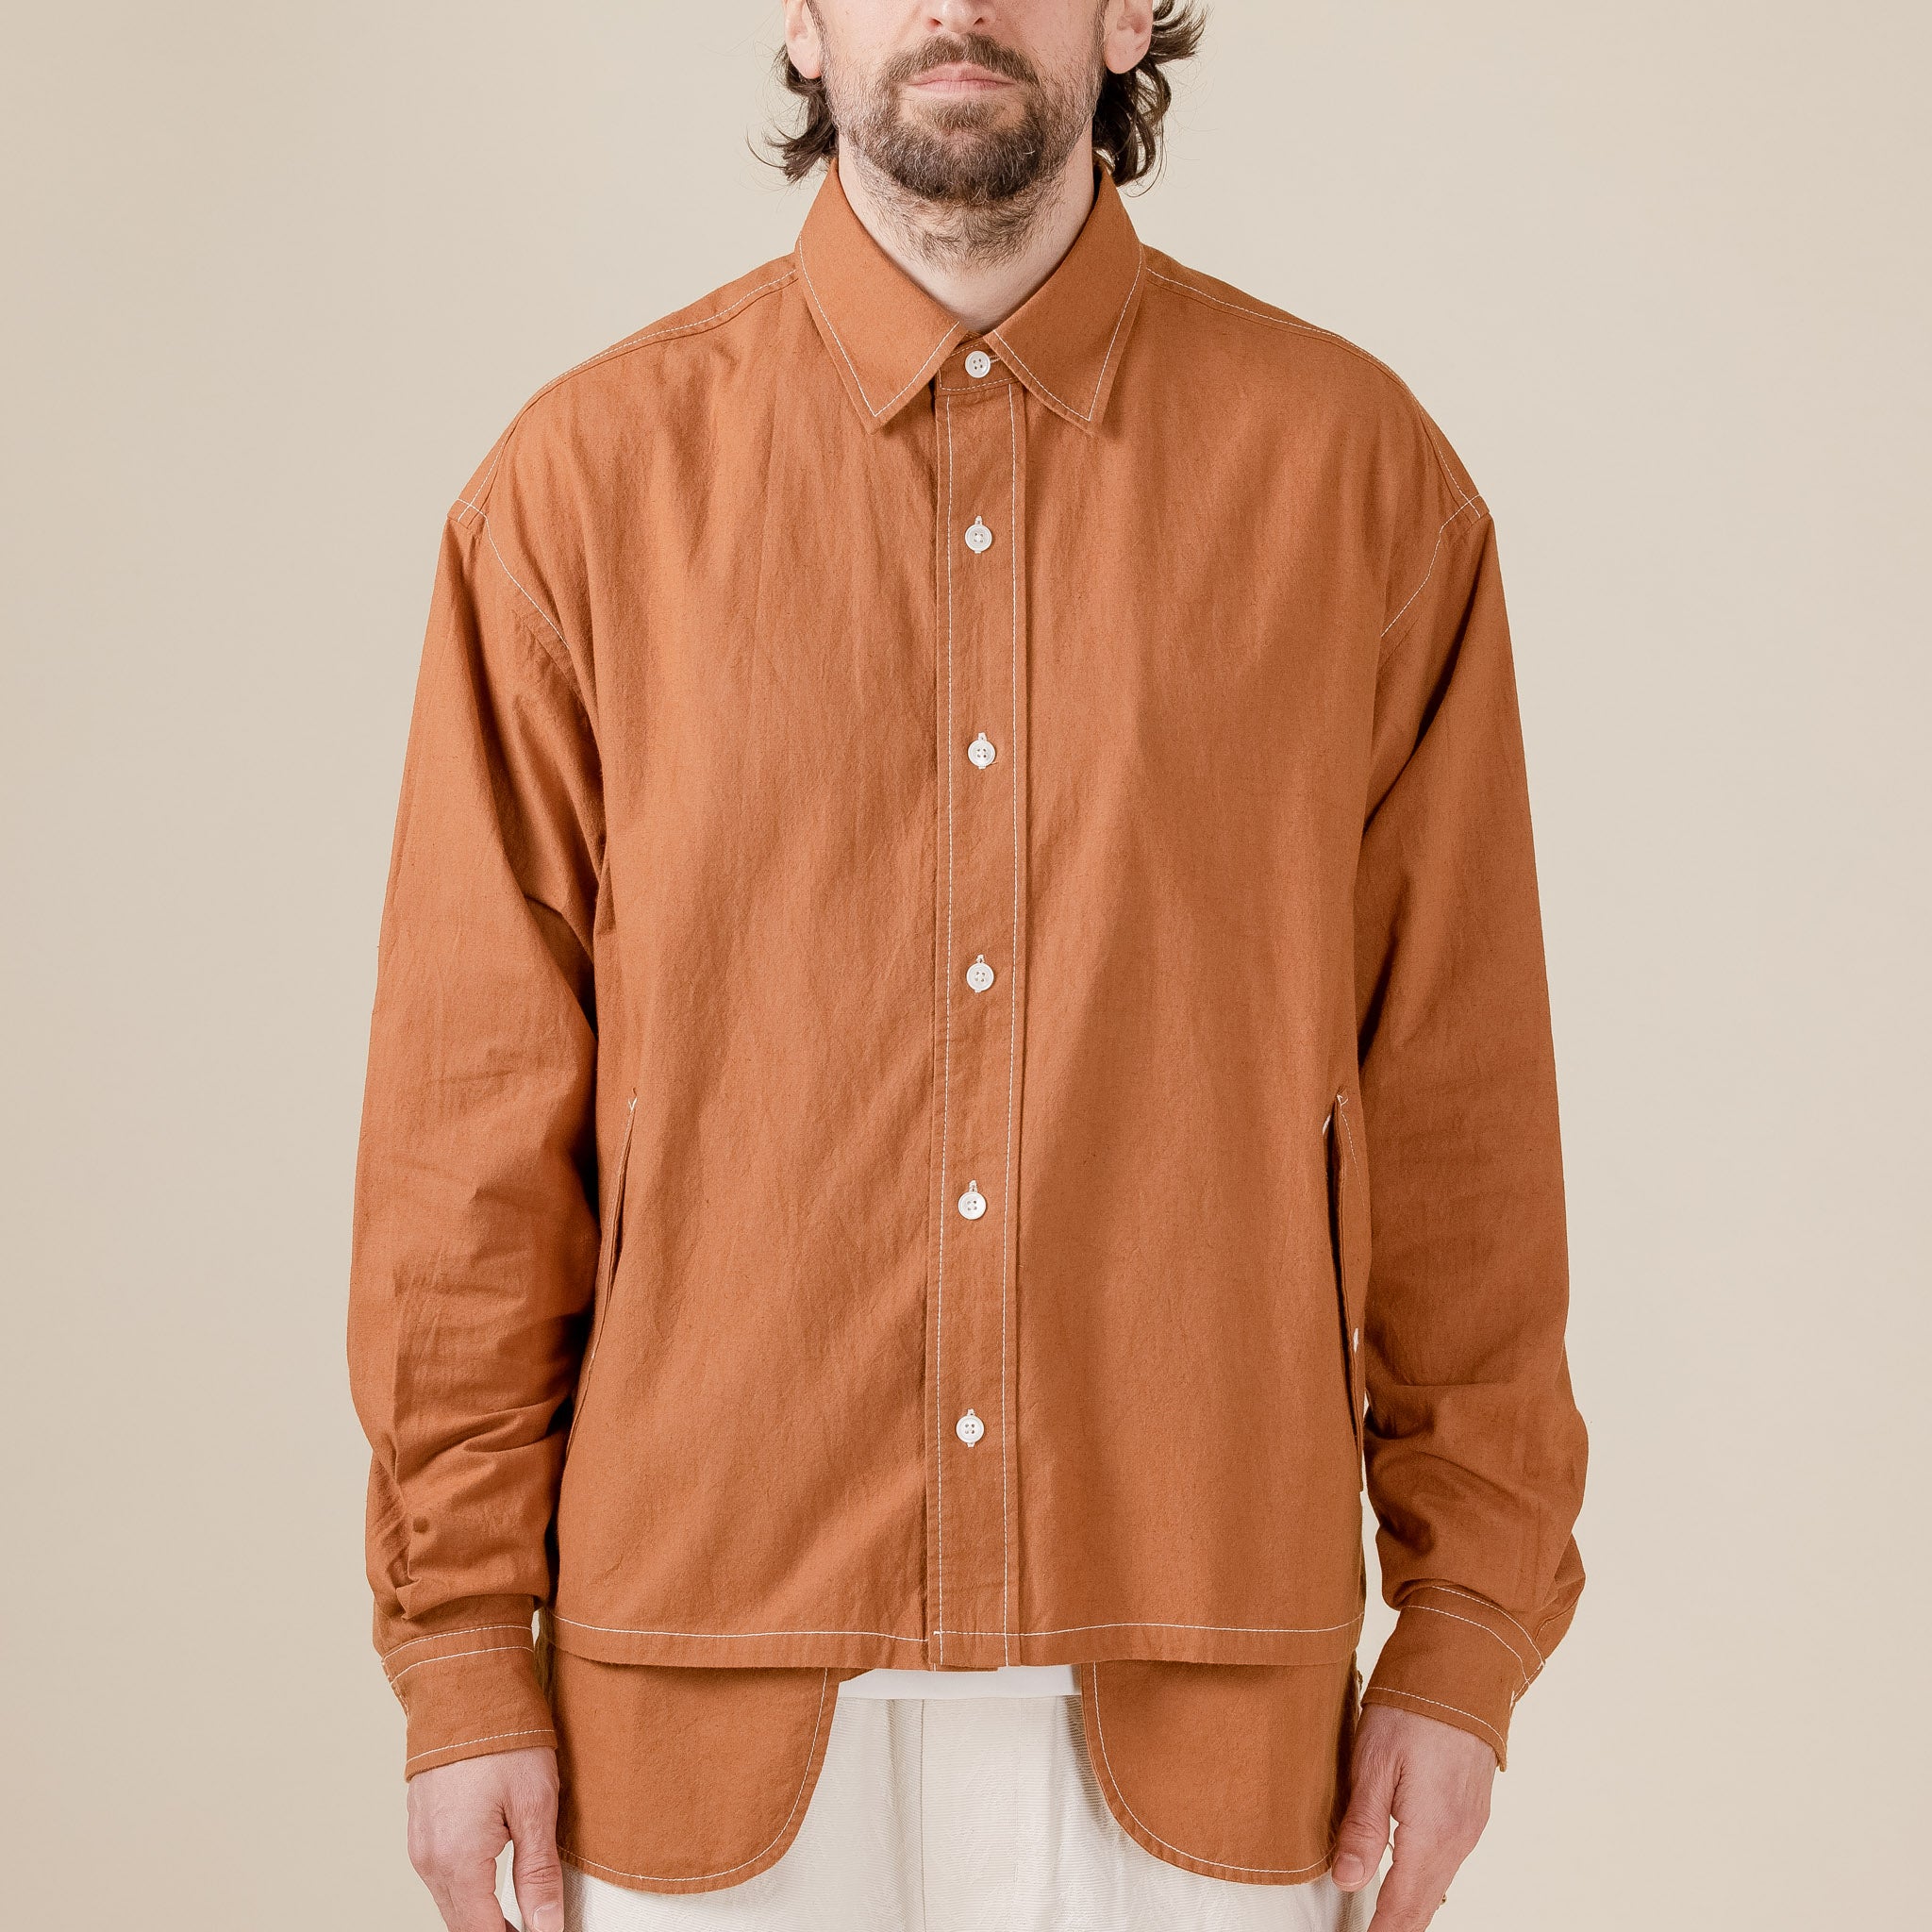 Cease - Afterhood Sweatshirt - Outdoor Orange